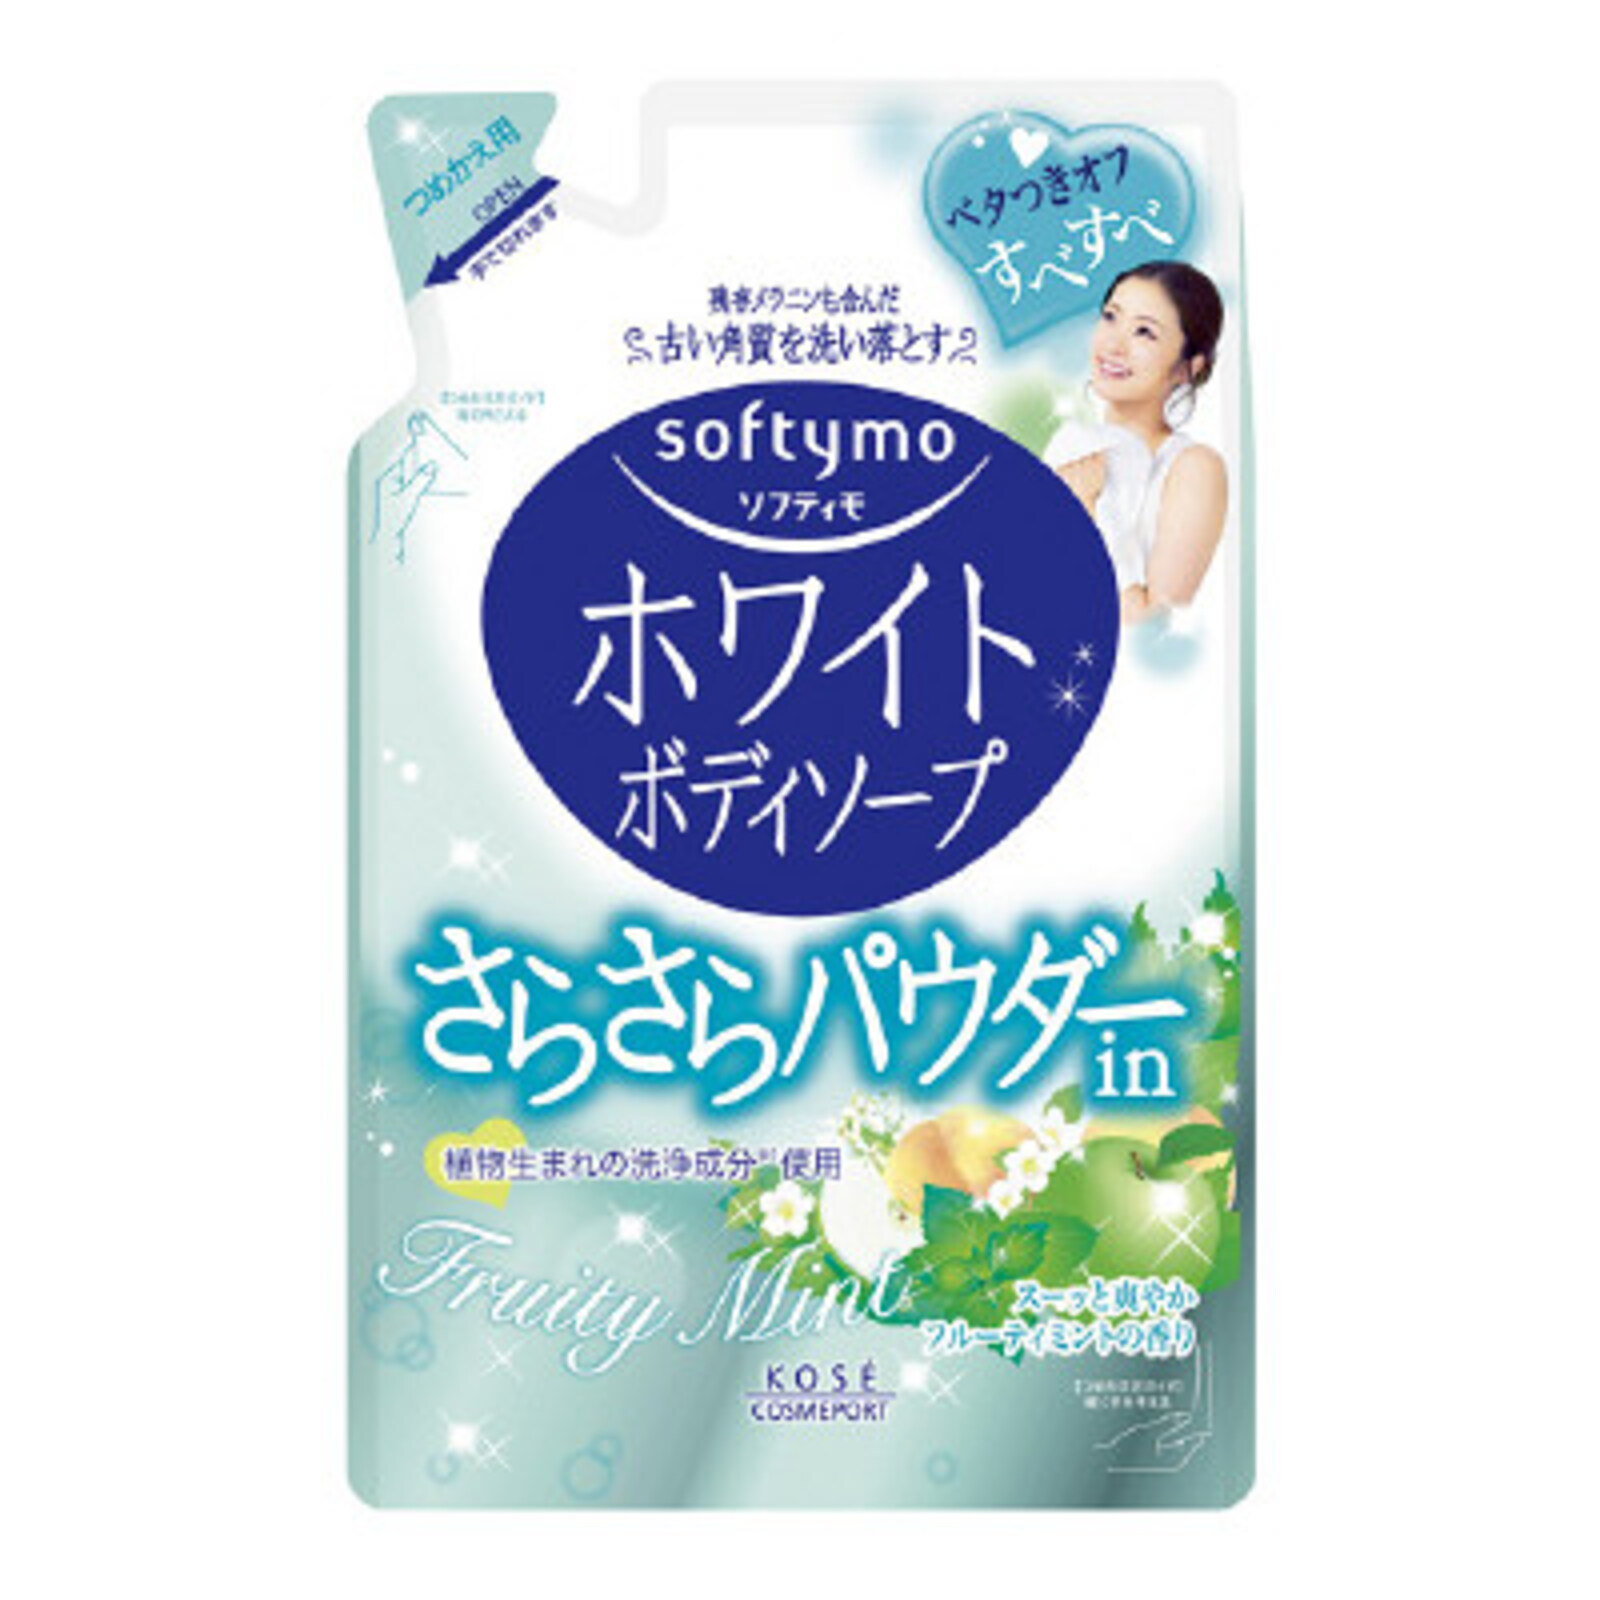 Мыло для тела Kose Softymo жидкое с растительной пудрой аромат мята лайм сменная уп 420 мл